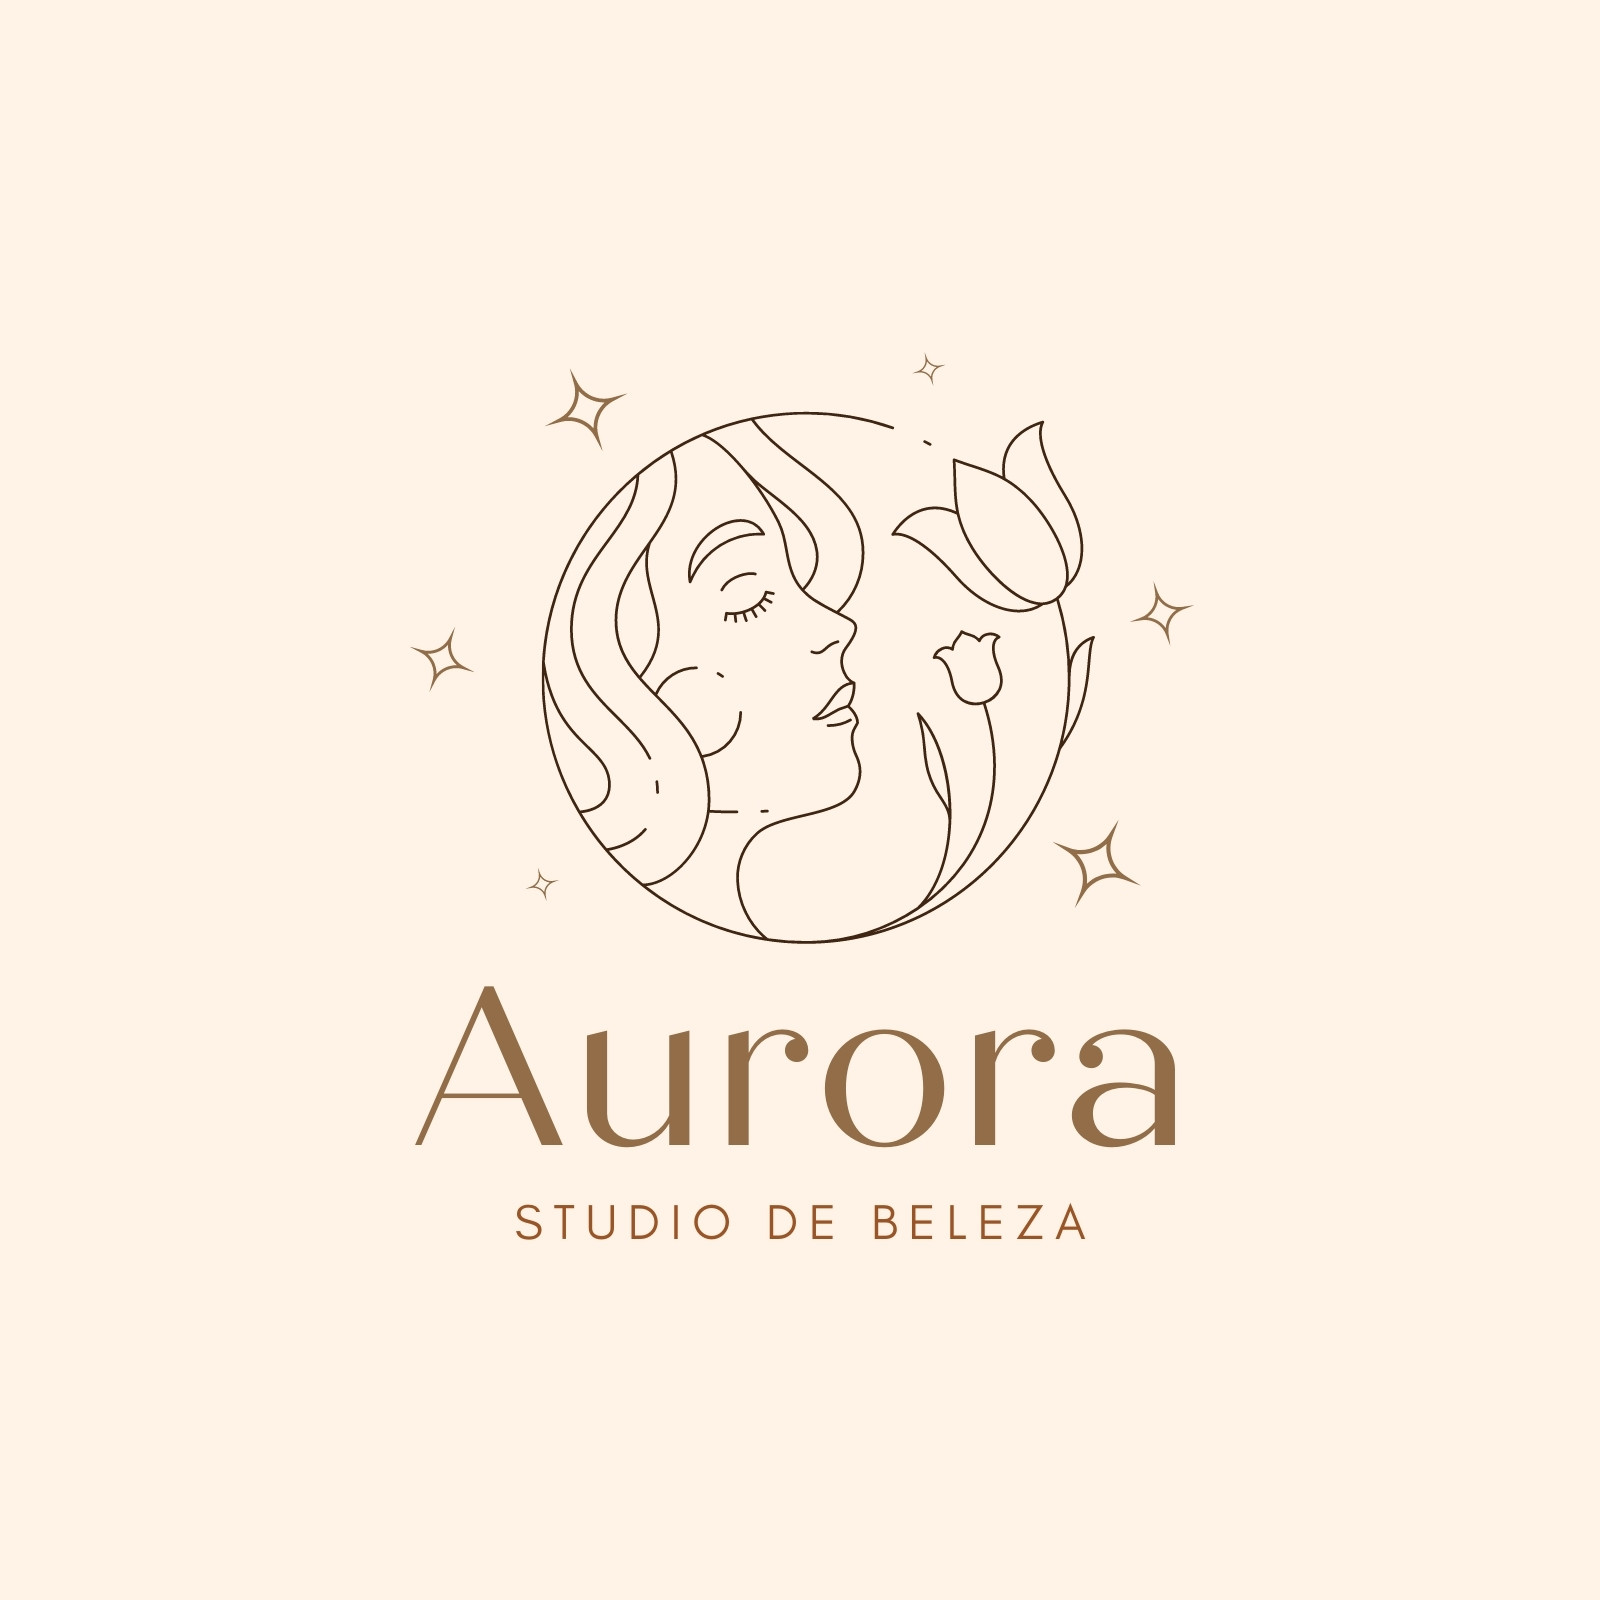 Arrazus - Studio de beleza  Criação de Logo Para Beleza